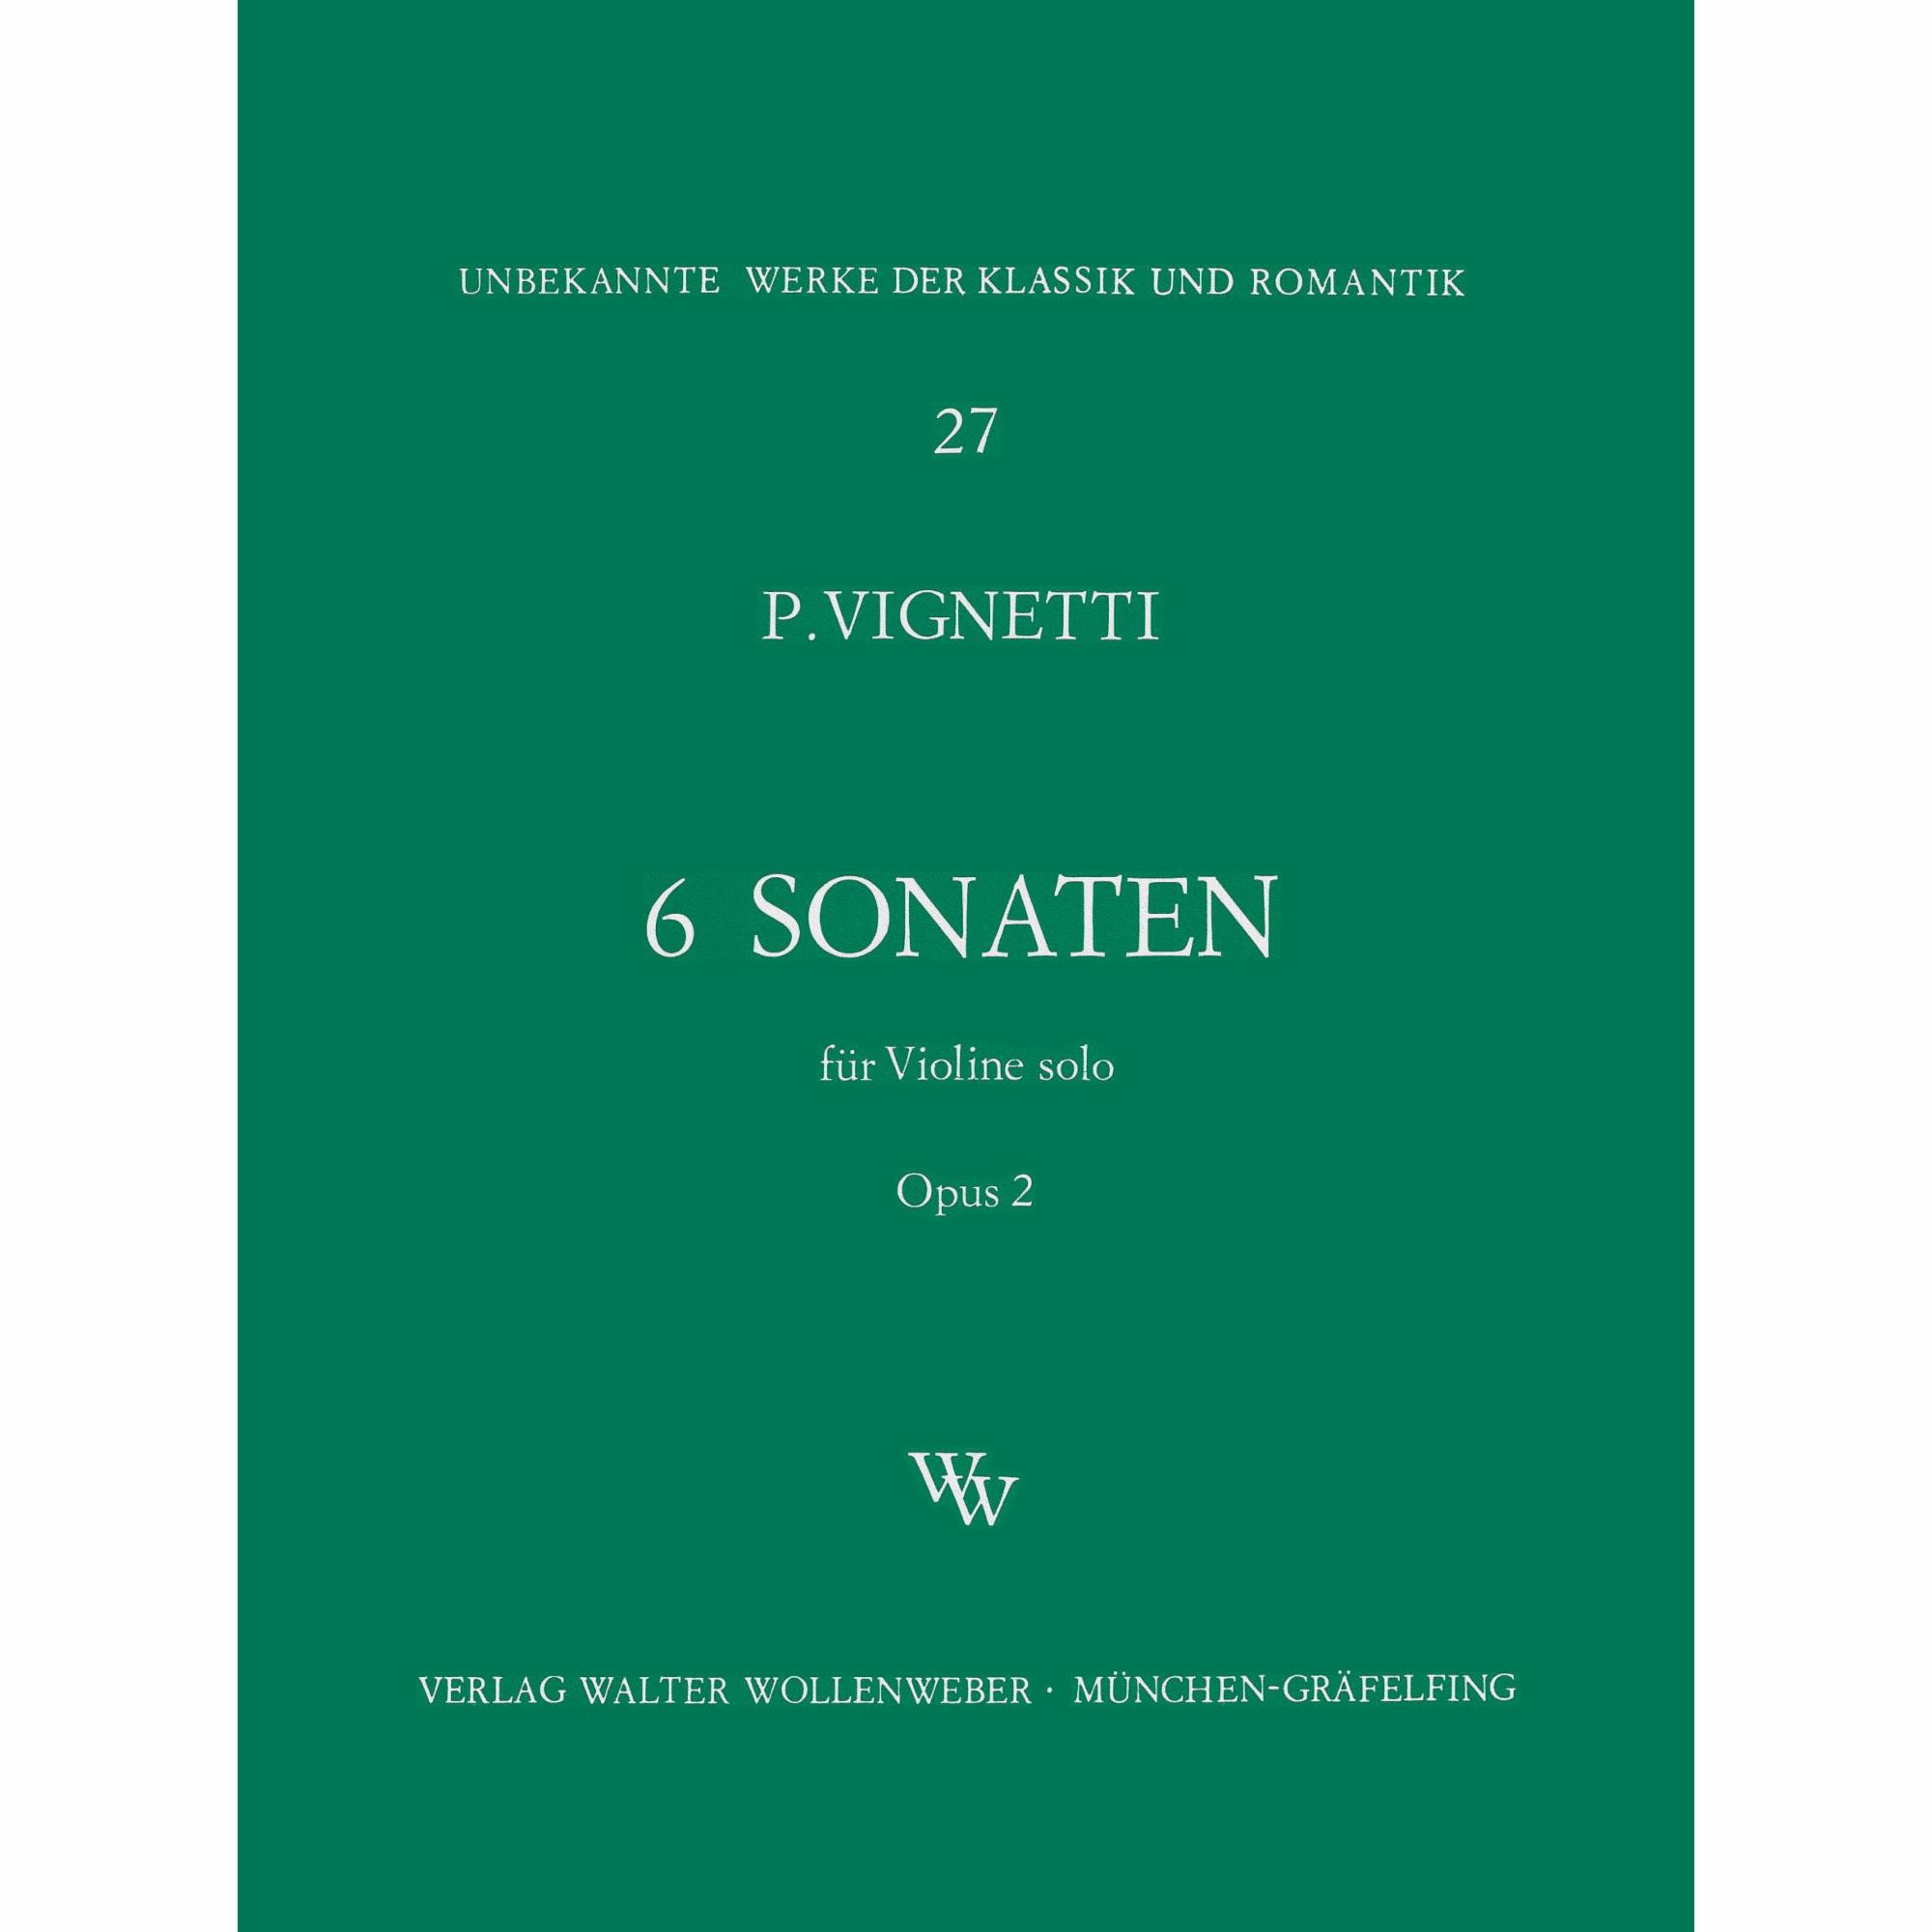 Vignetti -- 6 Sonatas, Op. 2 for Solo Violin